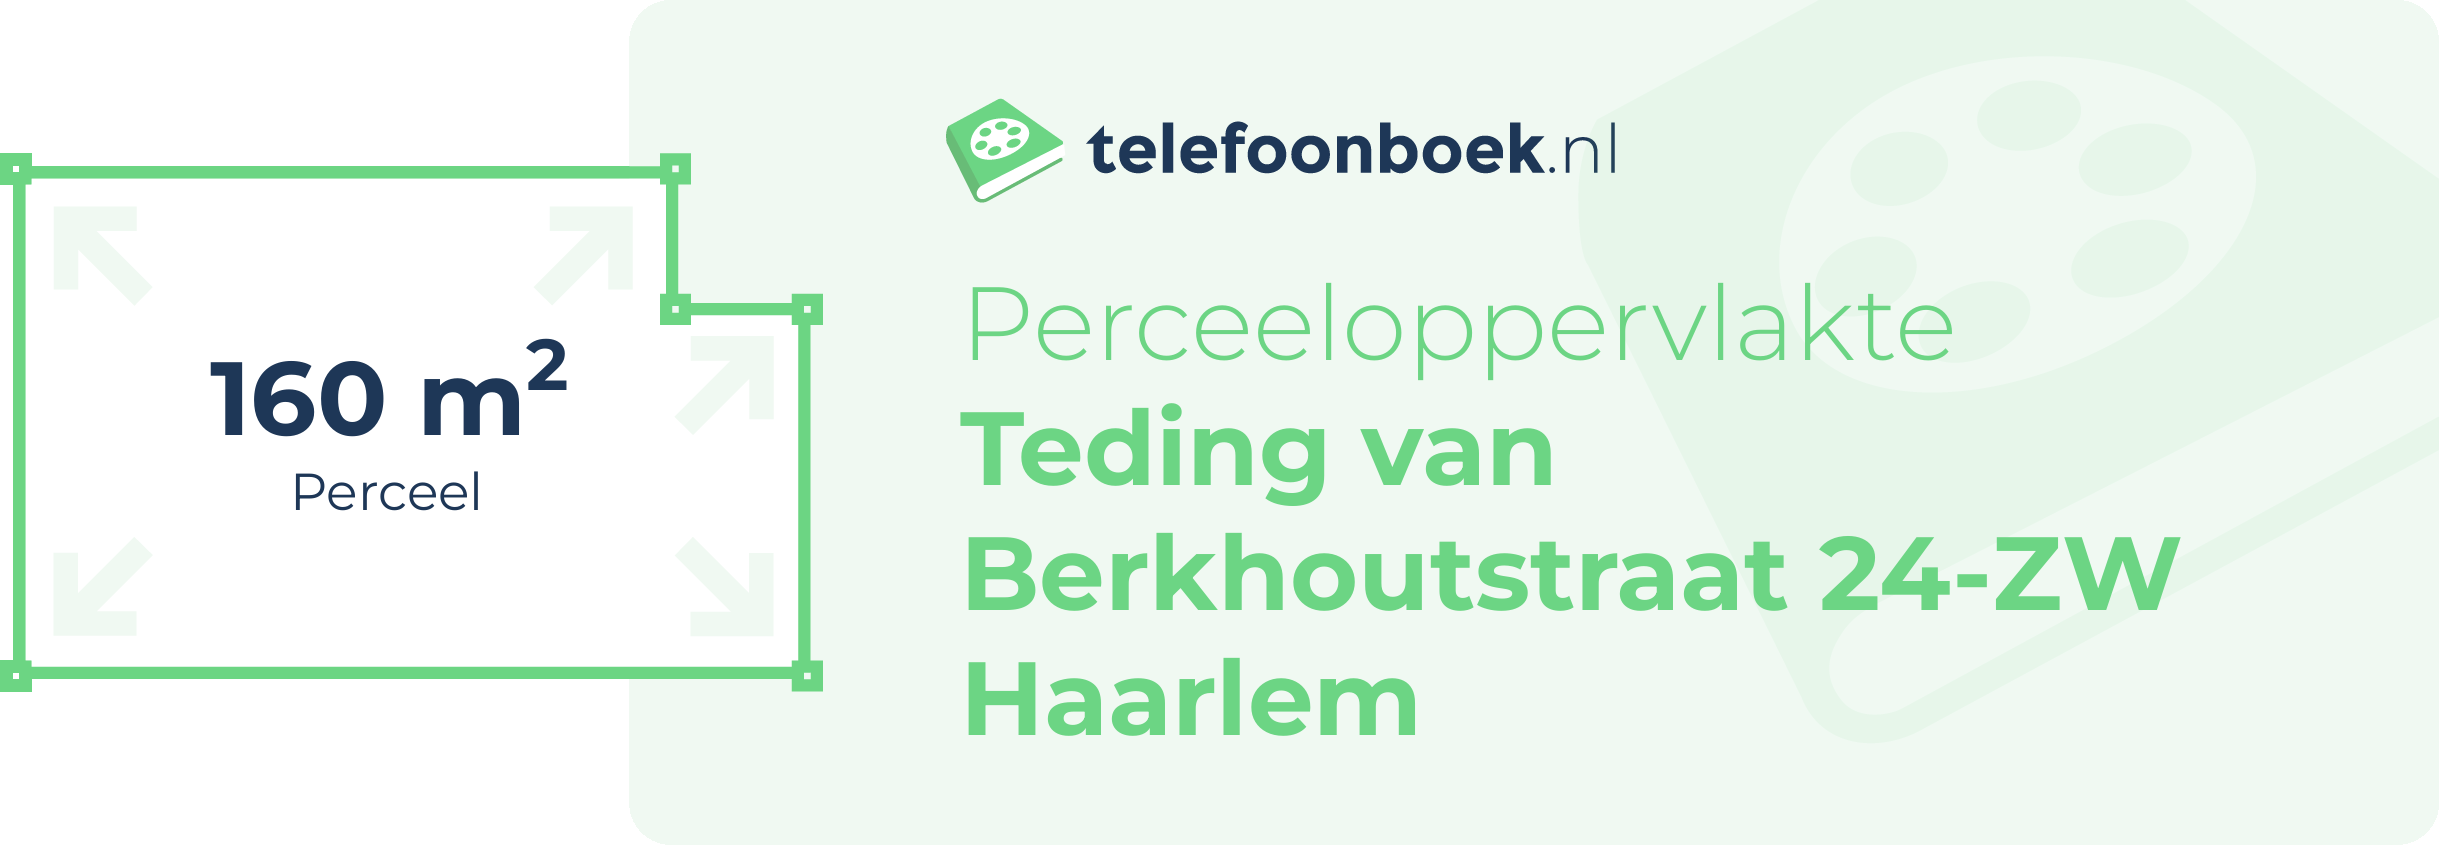 Perceeloppervlakte Teding Van Berkhoutstraat 24-ZW Haarlem